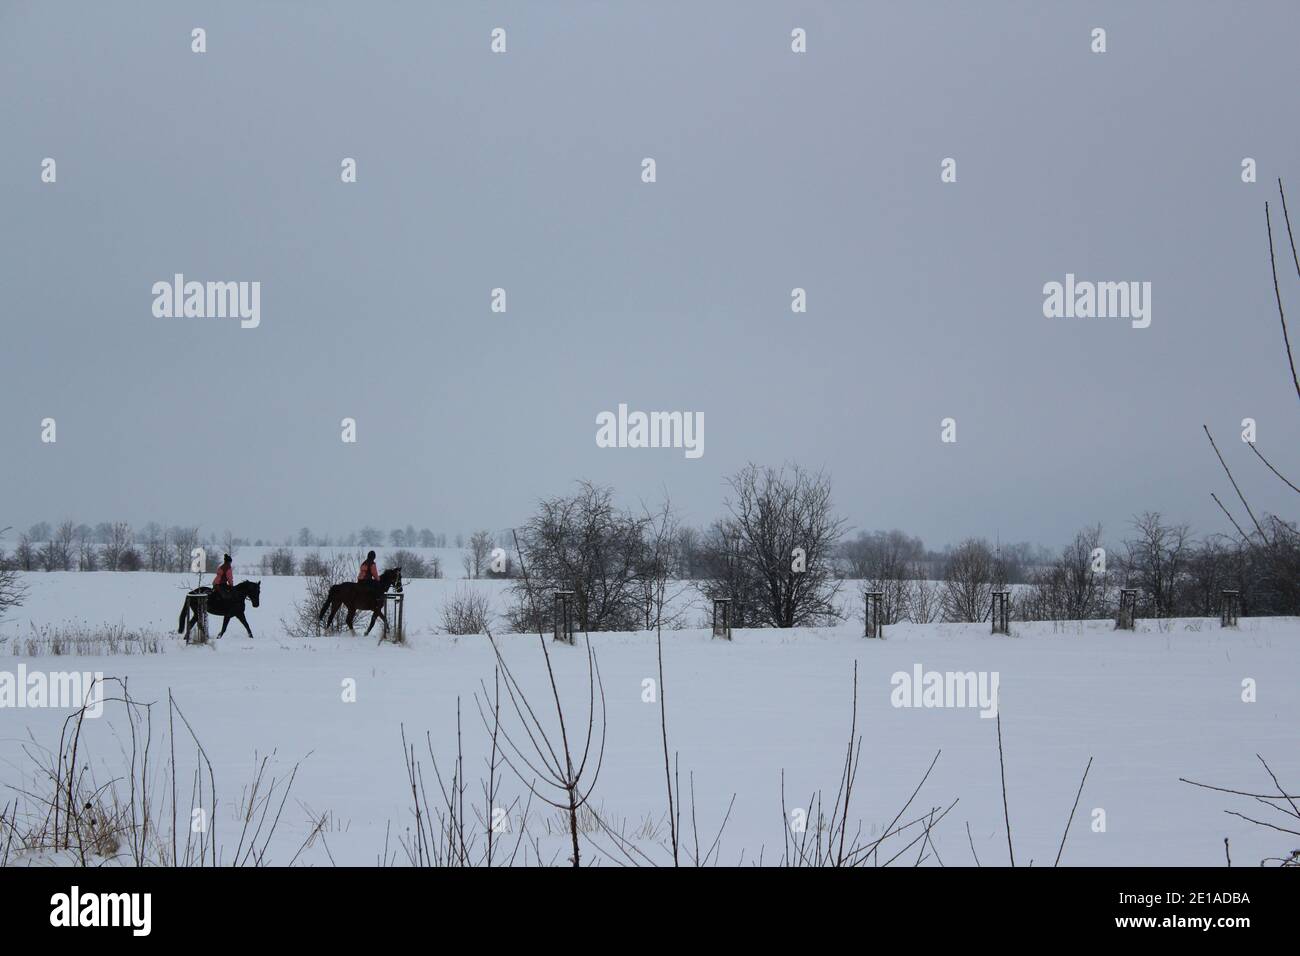 cavalcare su due cavalli neri nella neve in inverno paese delle meraviglie Foto Stock